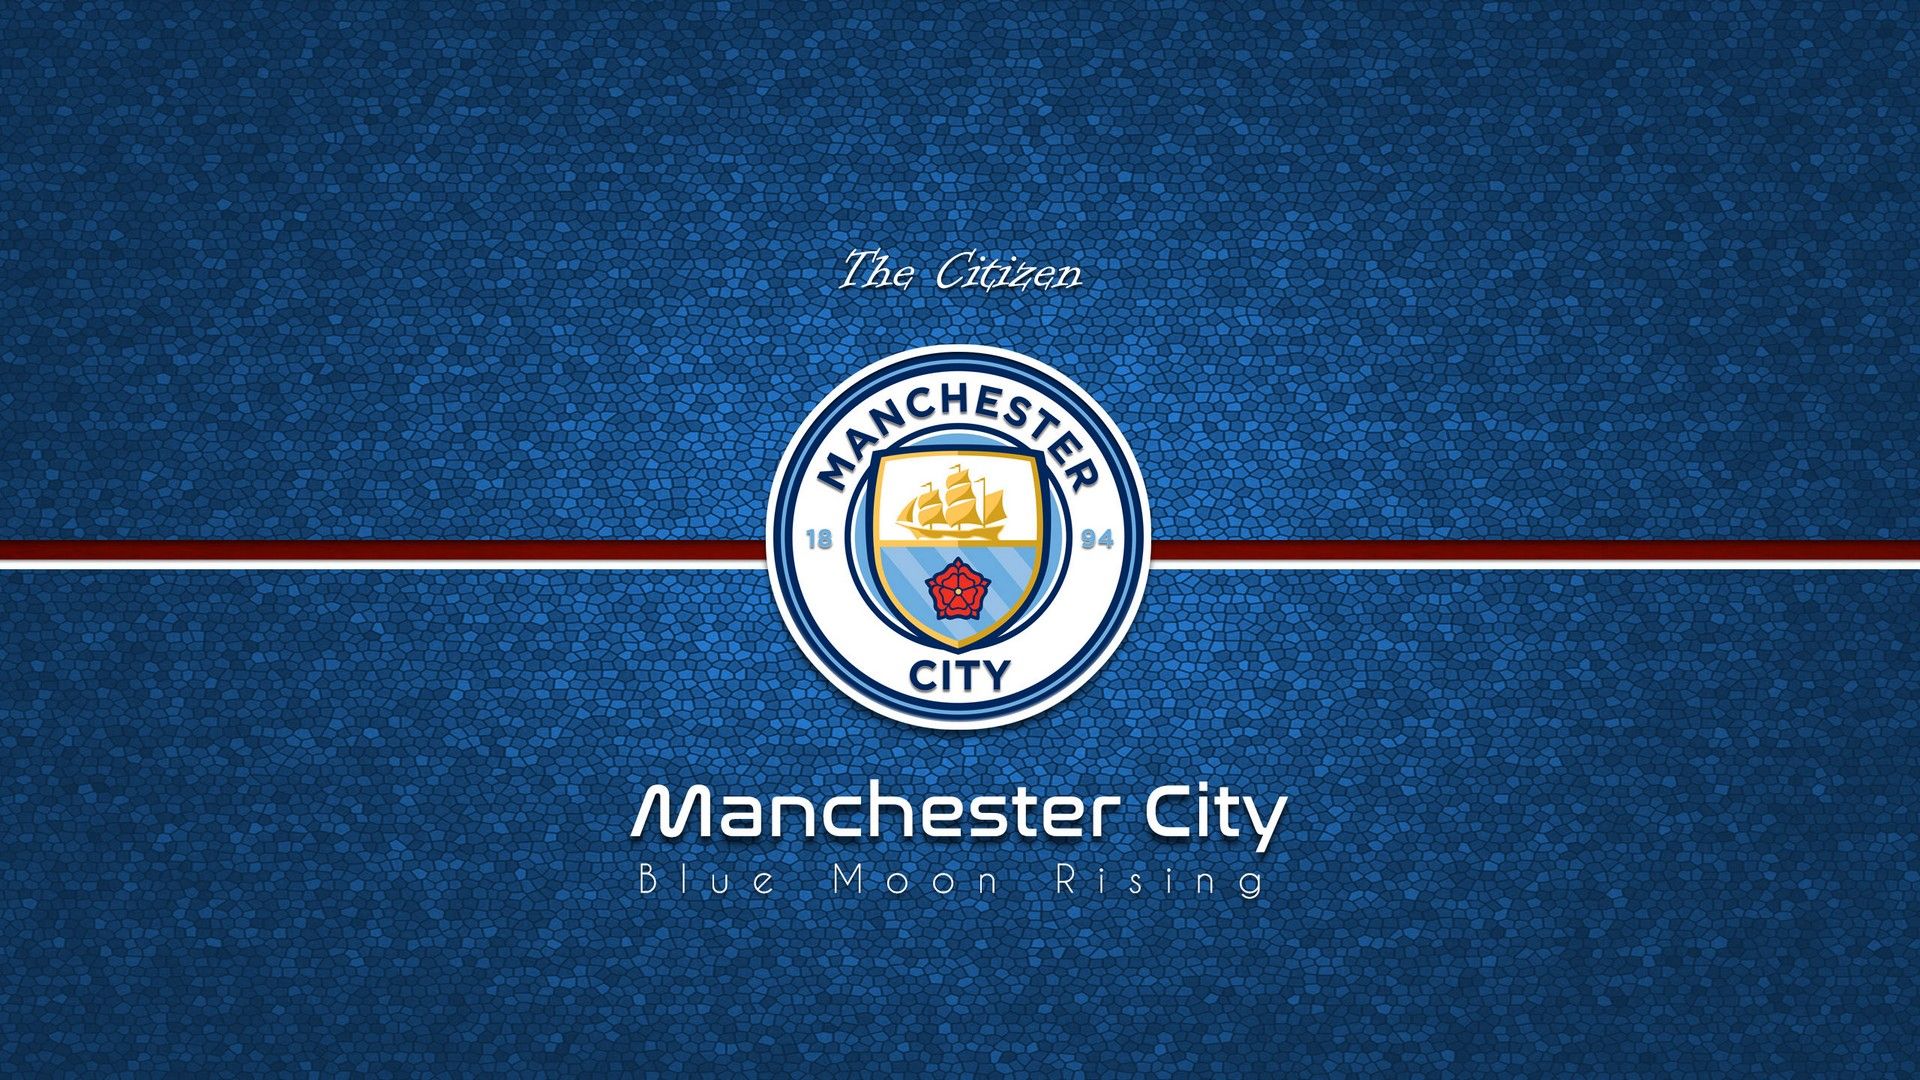 Bộ Sưu Tập Hình Nền Tuyệt Vời Cho Điện Thoại và Máy Tính từ Manchester City